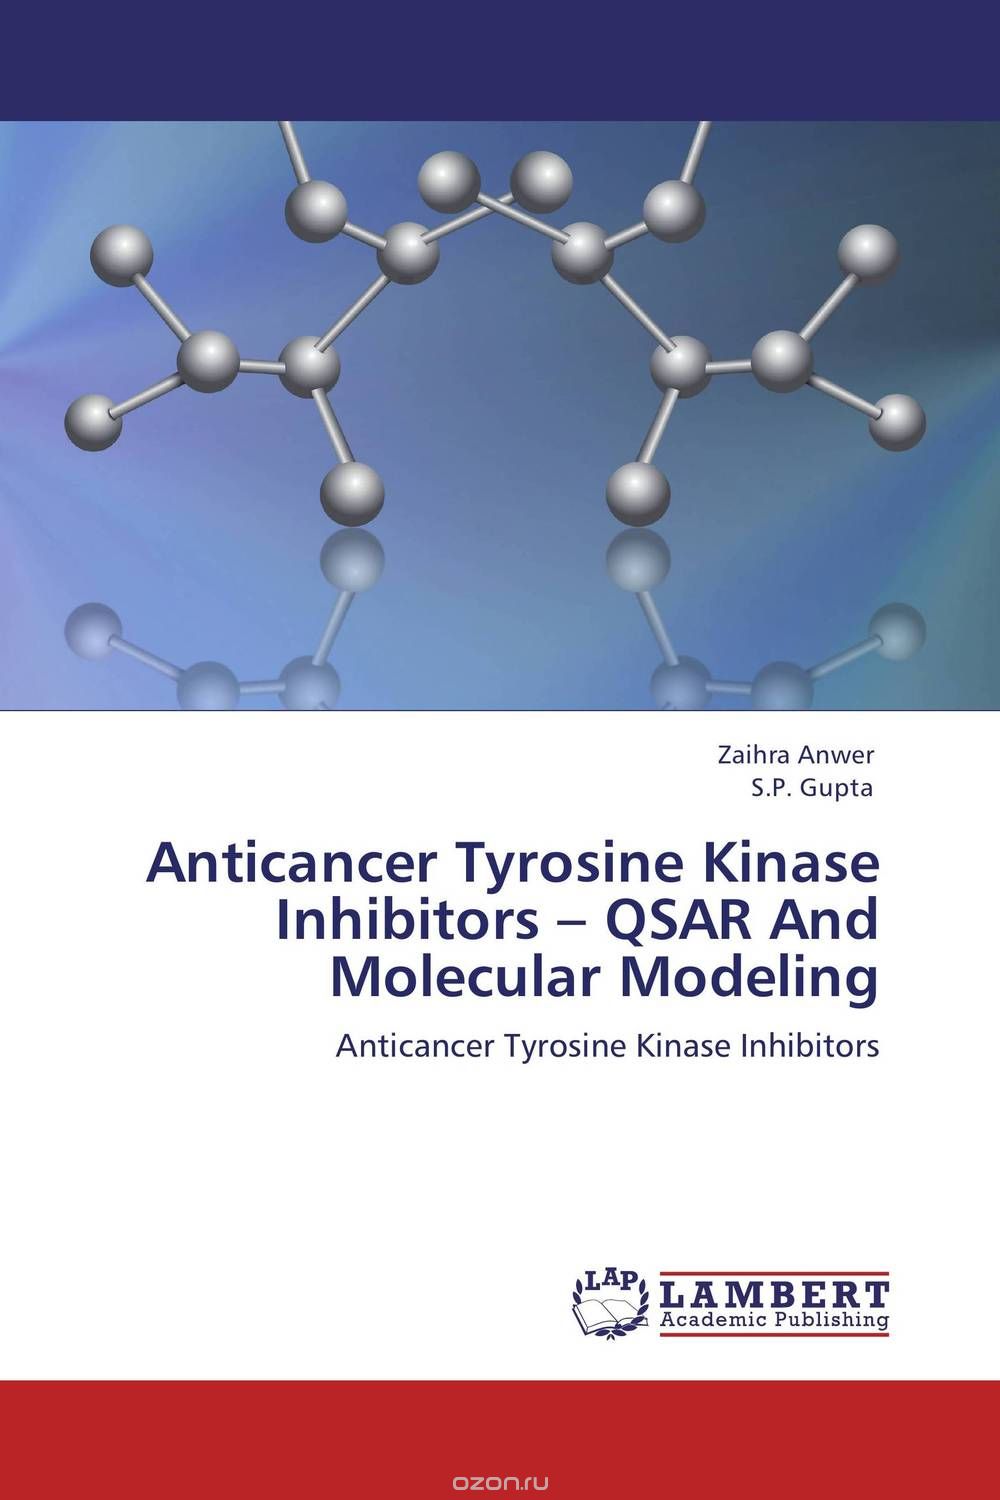 Скачать книгу "Anticancer Tyrosine Kinase Inhibitors – QSAR And Molecular Modeling"